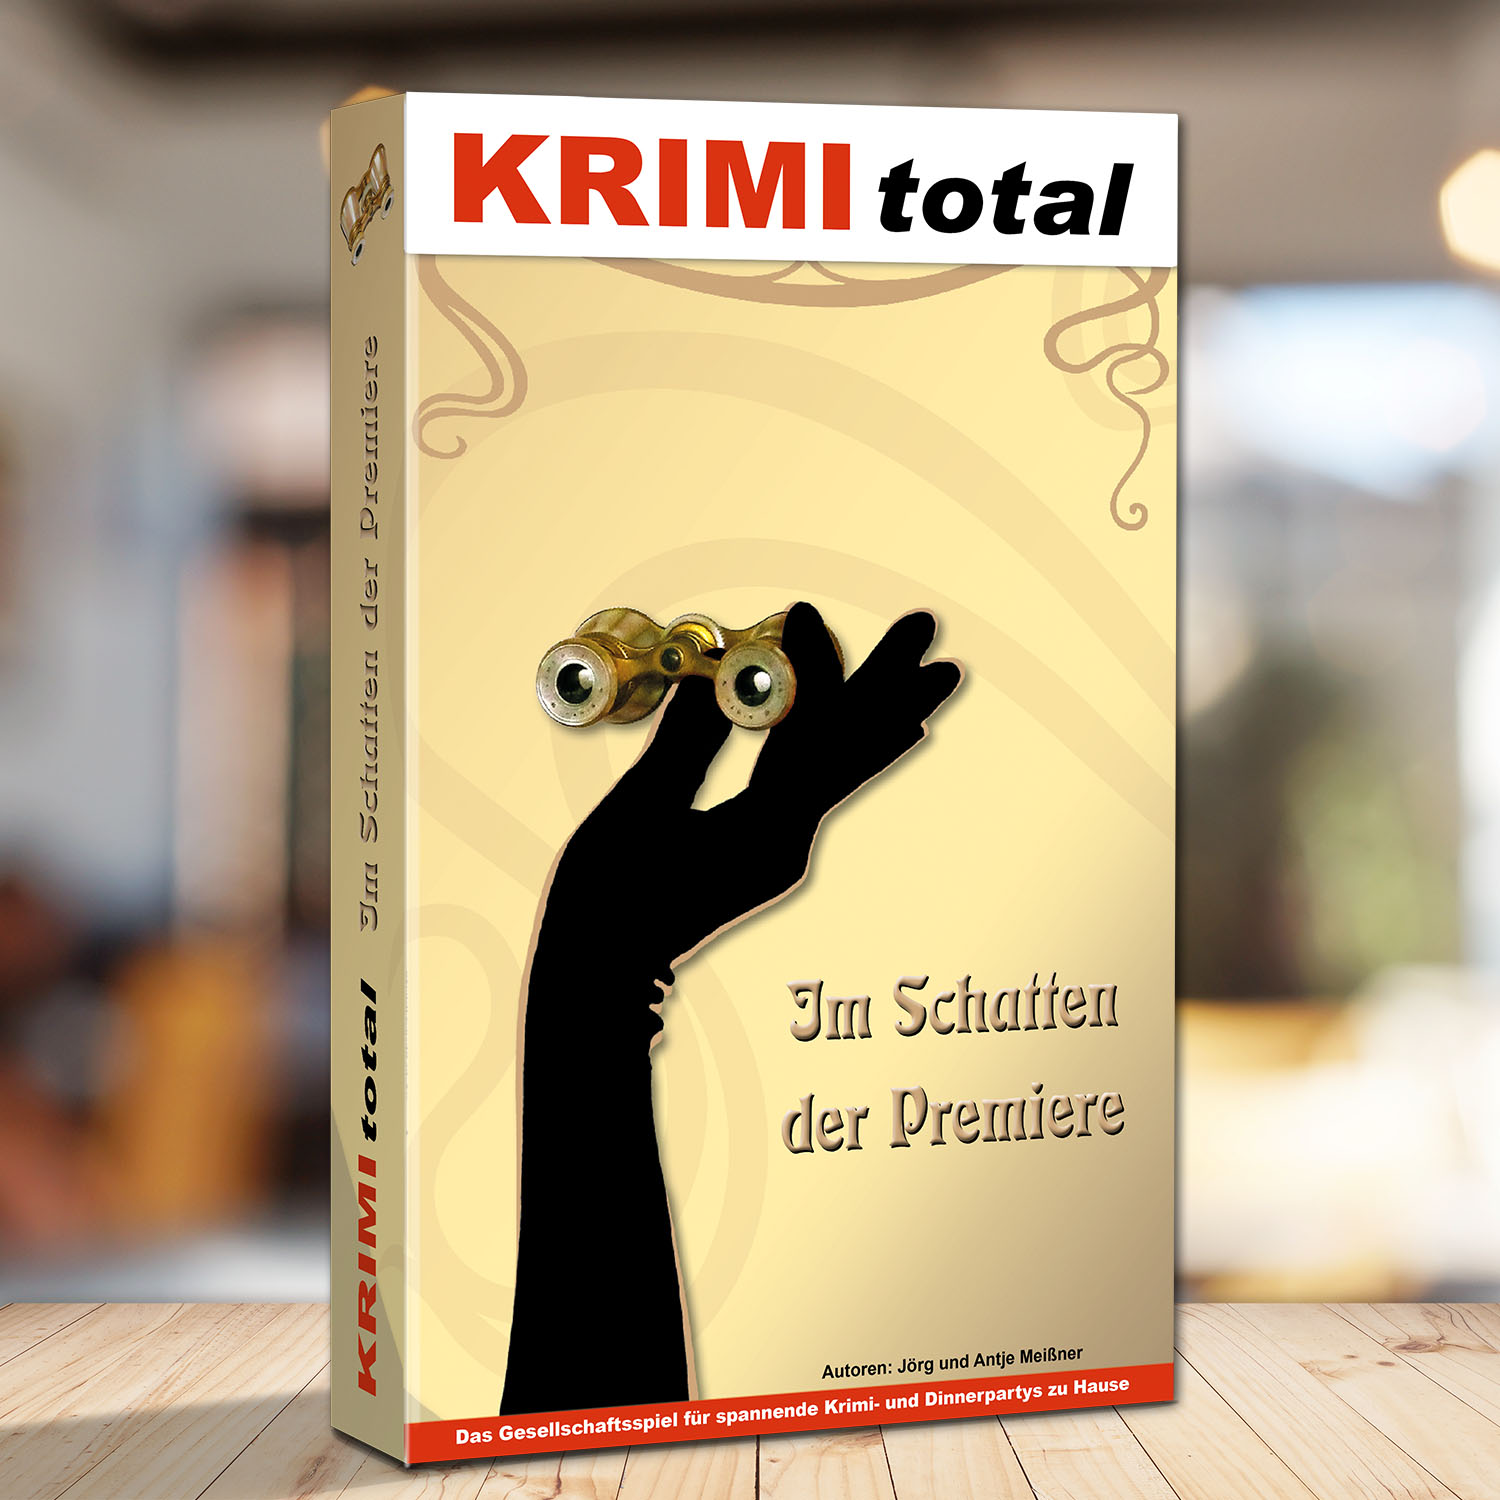 Abbildung eines Spielkartons des Krimispiels "KRIMI total - Im Schatten der Premiere"